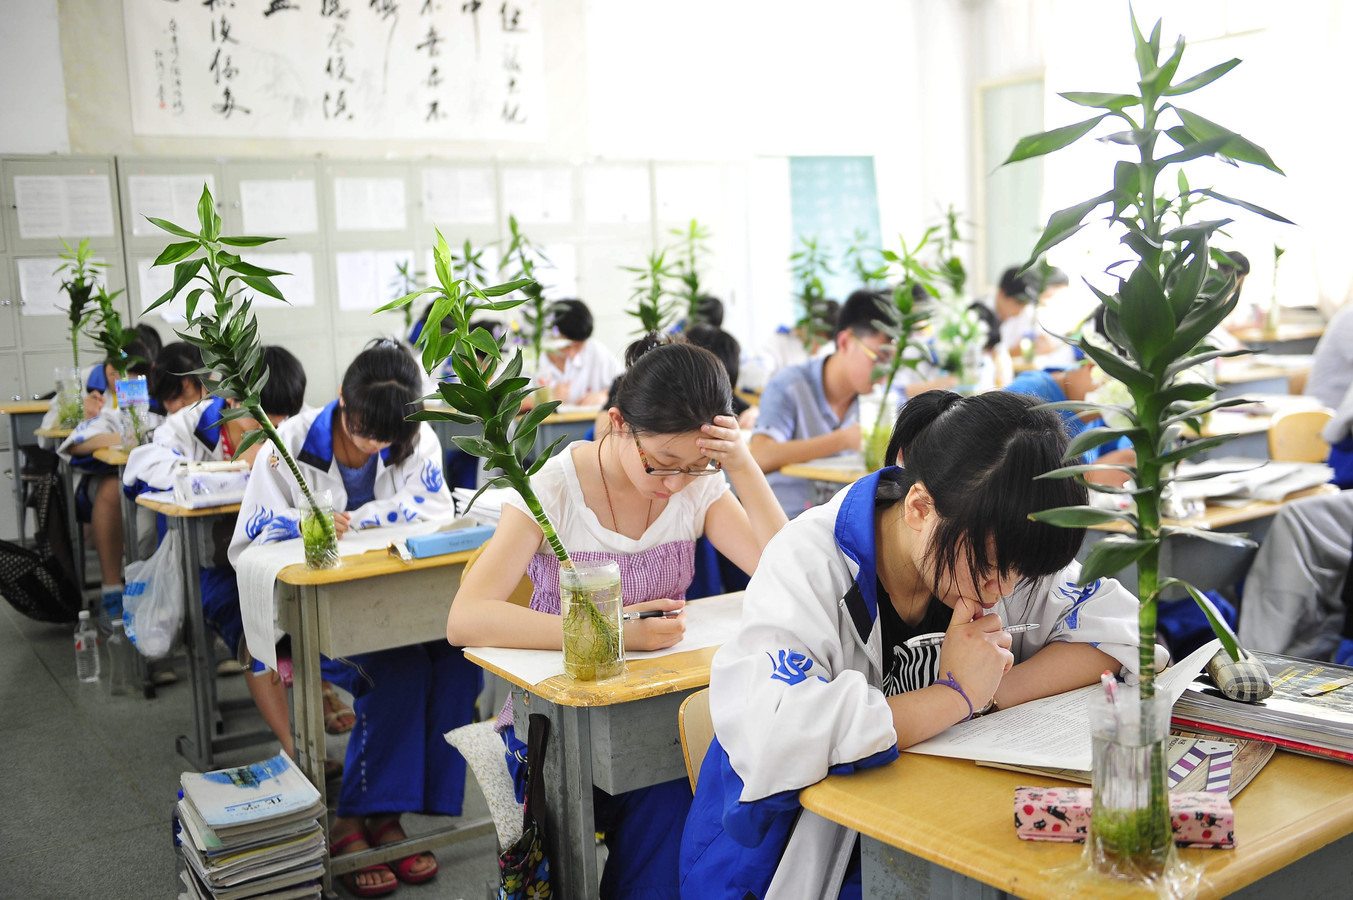 Среднее образование в Китае